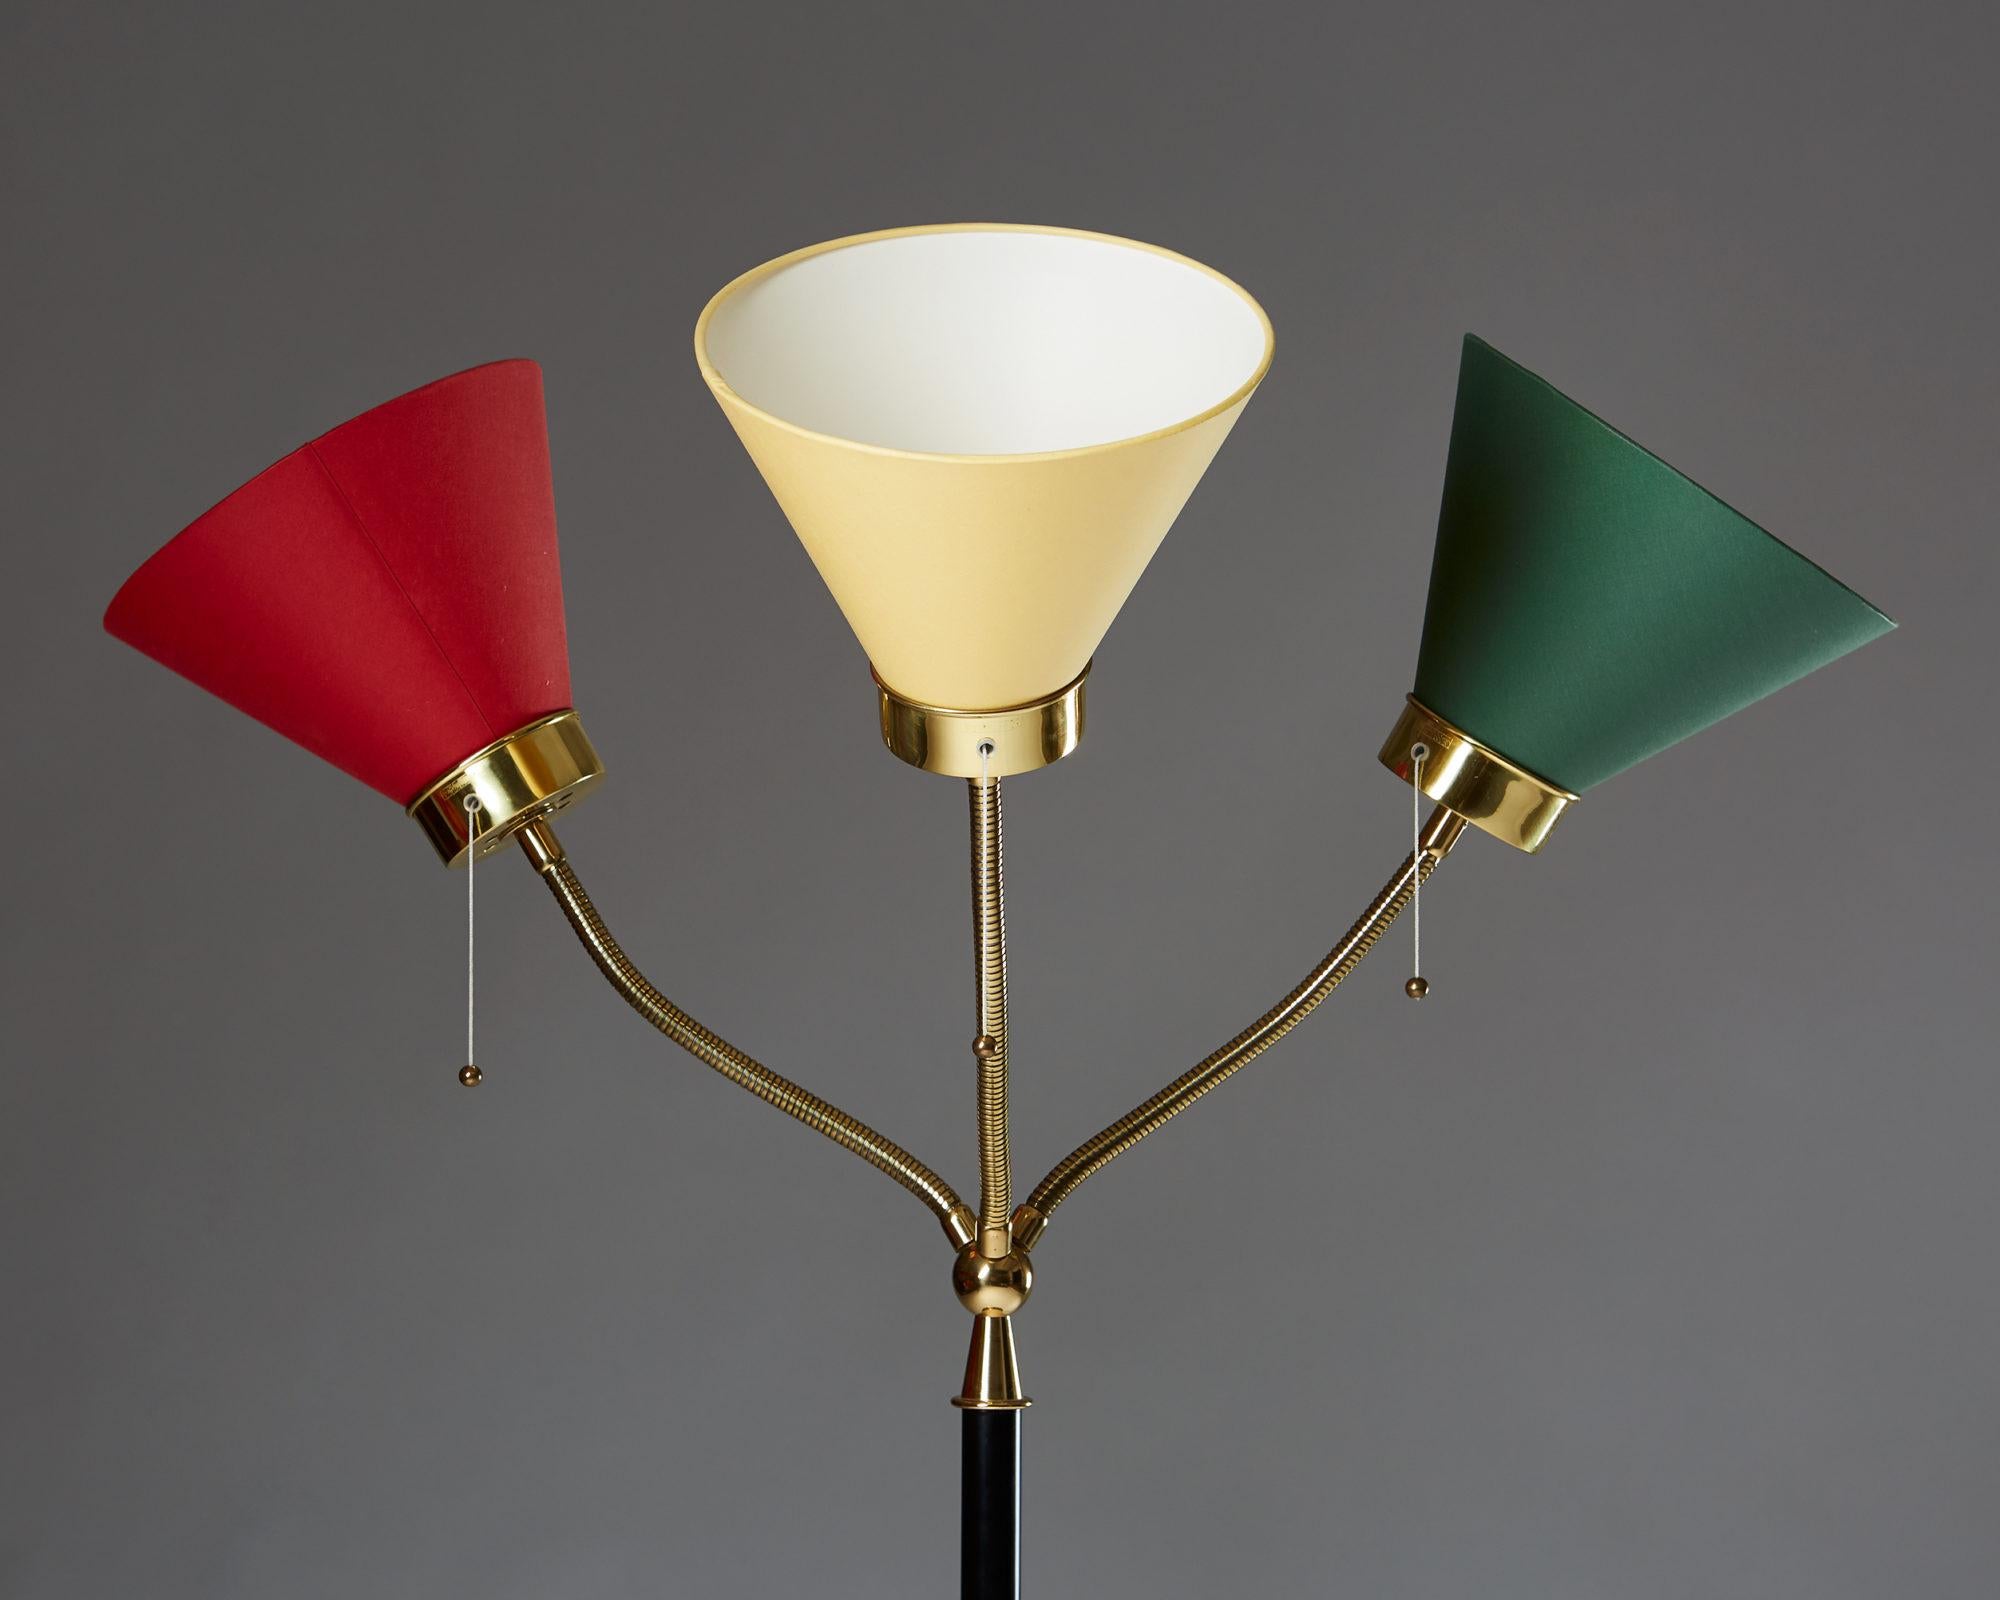 Scandinavian Modern Floor Lamp, Model G2431, Designed by Josef Frank for Svenskt Tenn, Sweden, 1939